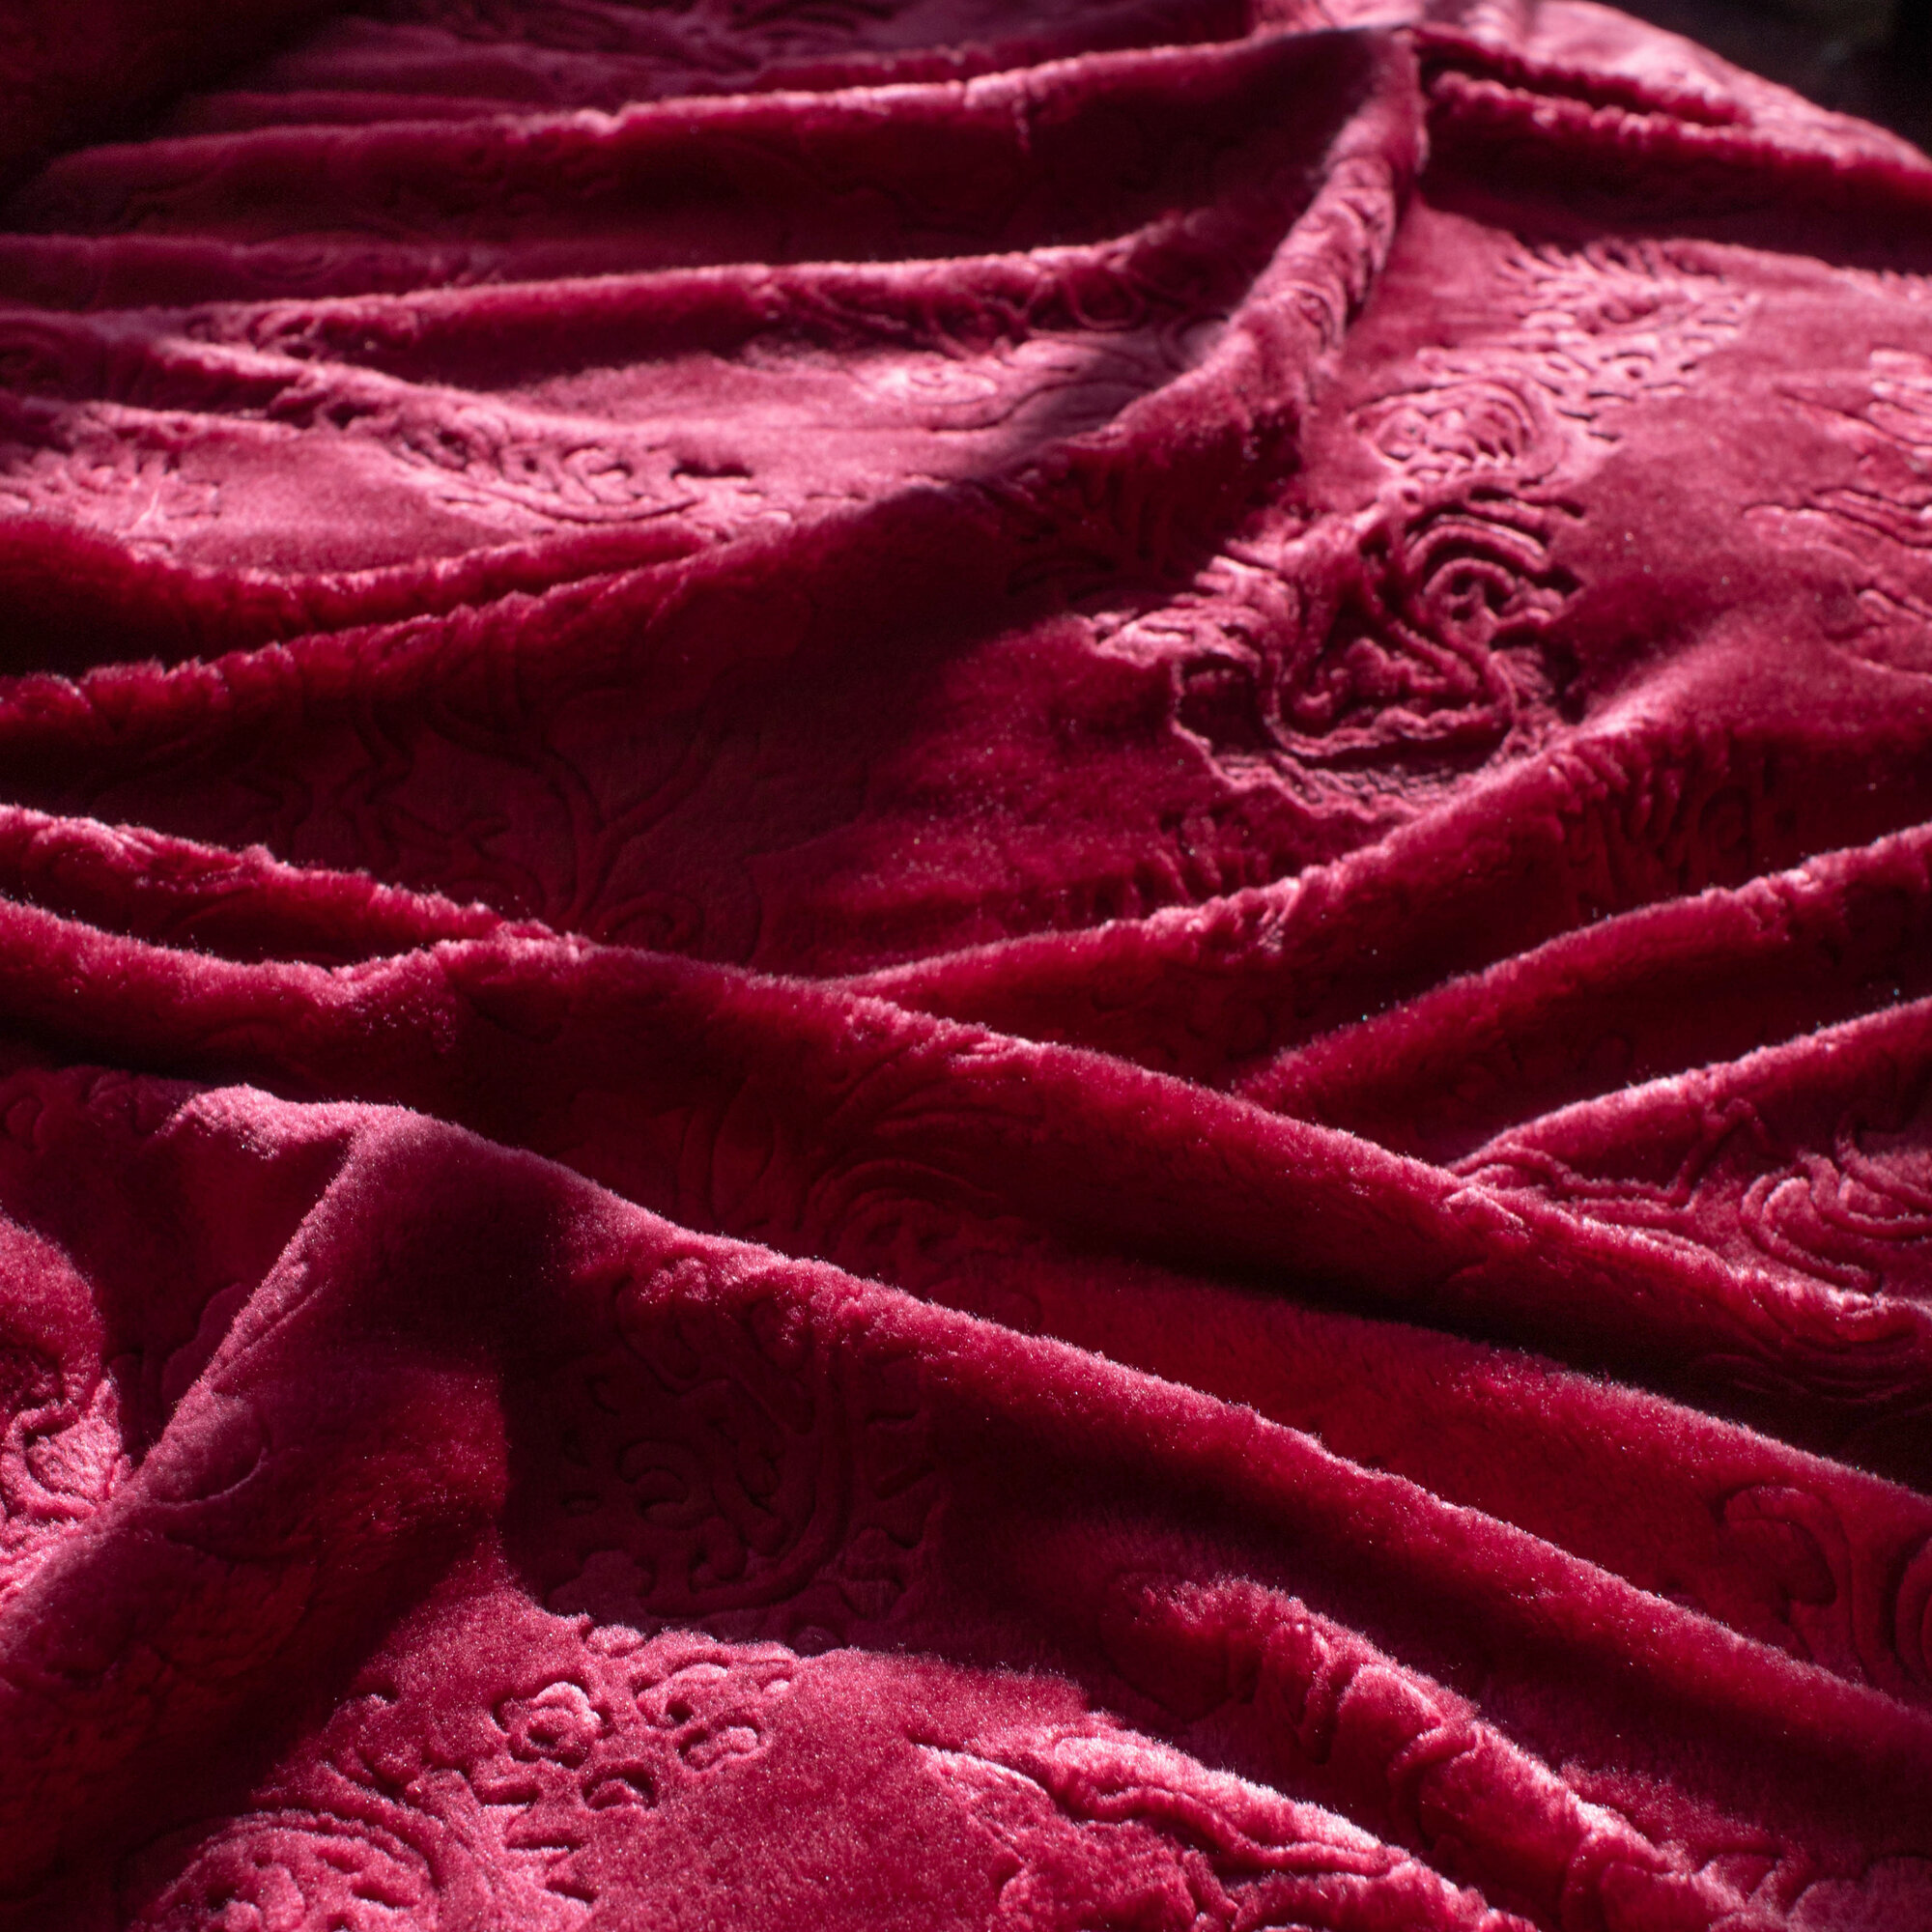 Плед двуспальный евро 200х220 бордо, покрывало на кровать и диван Cleo Parma, пушистый с рисунком, велсофт